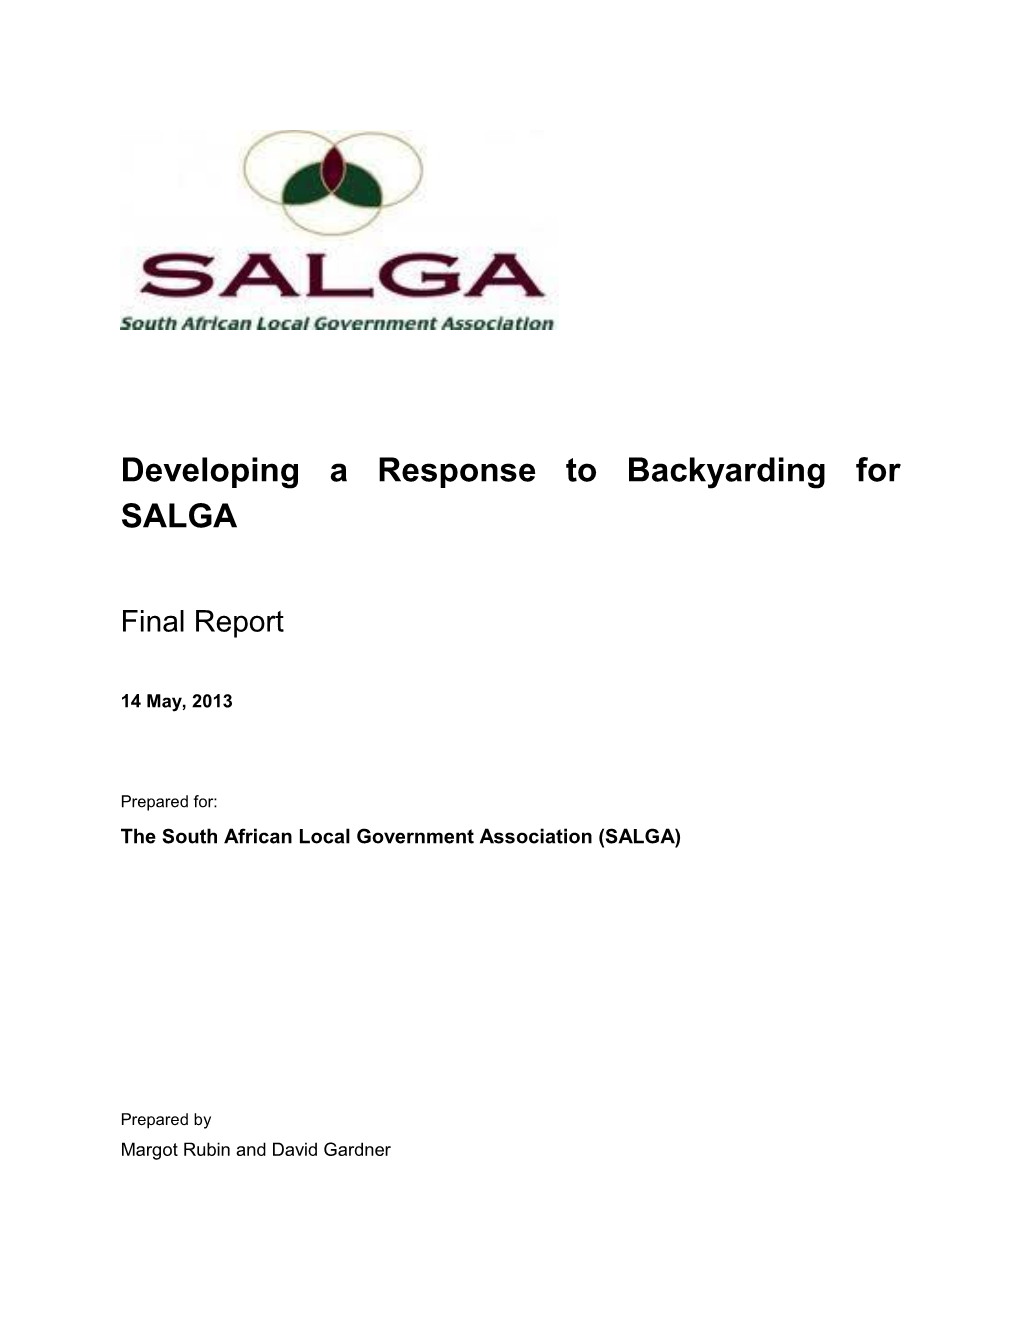 Developing a Response to Backyarding for SALGA